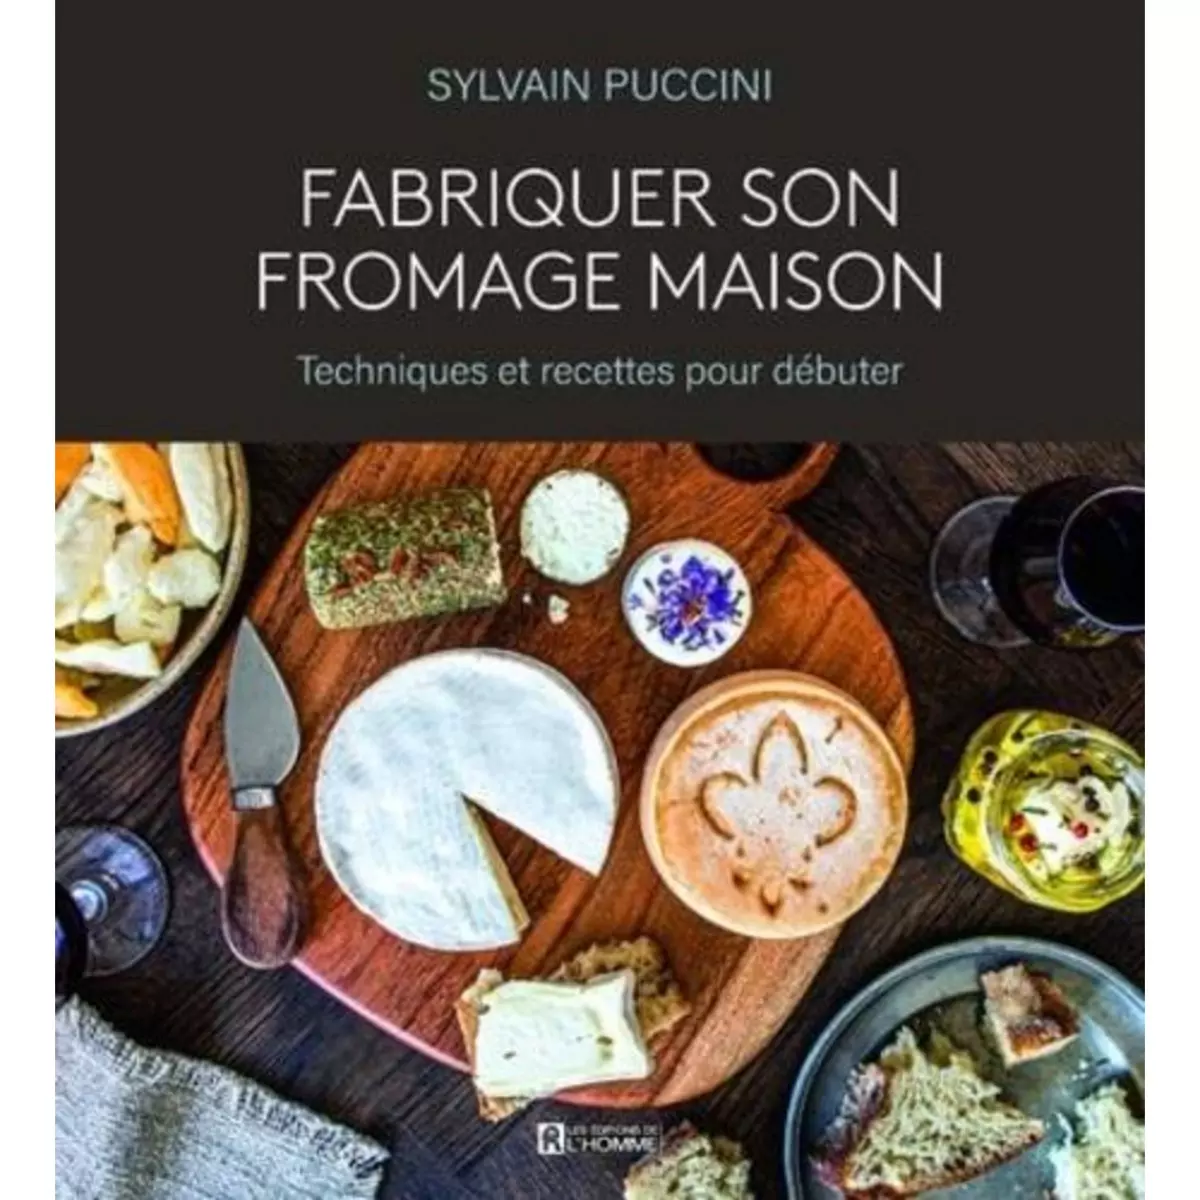  FABRIQUER SON FROMAGE MAISON. TECHNIQUES ET RECETTES POUR DEBUTER, Puccini Sylvain